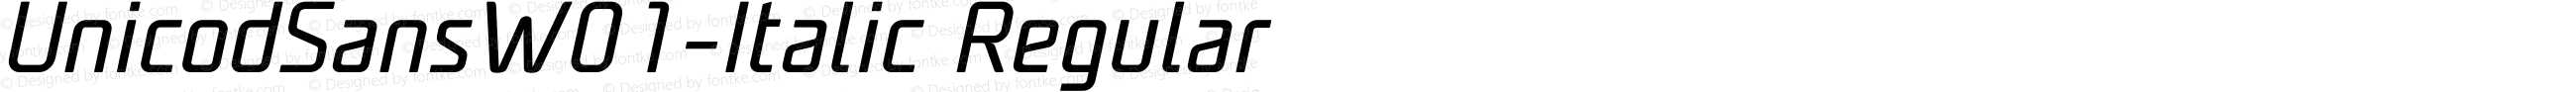 Unicod Sans W01 Italic